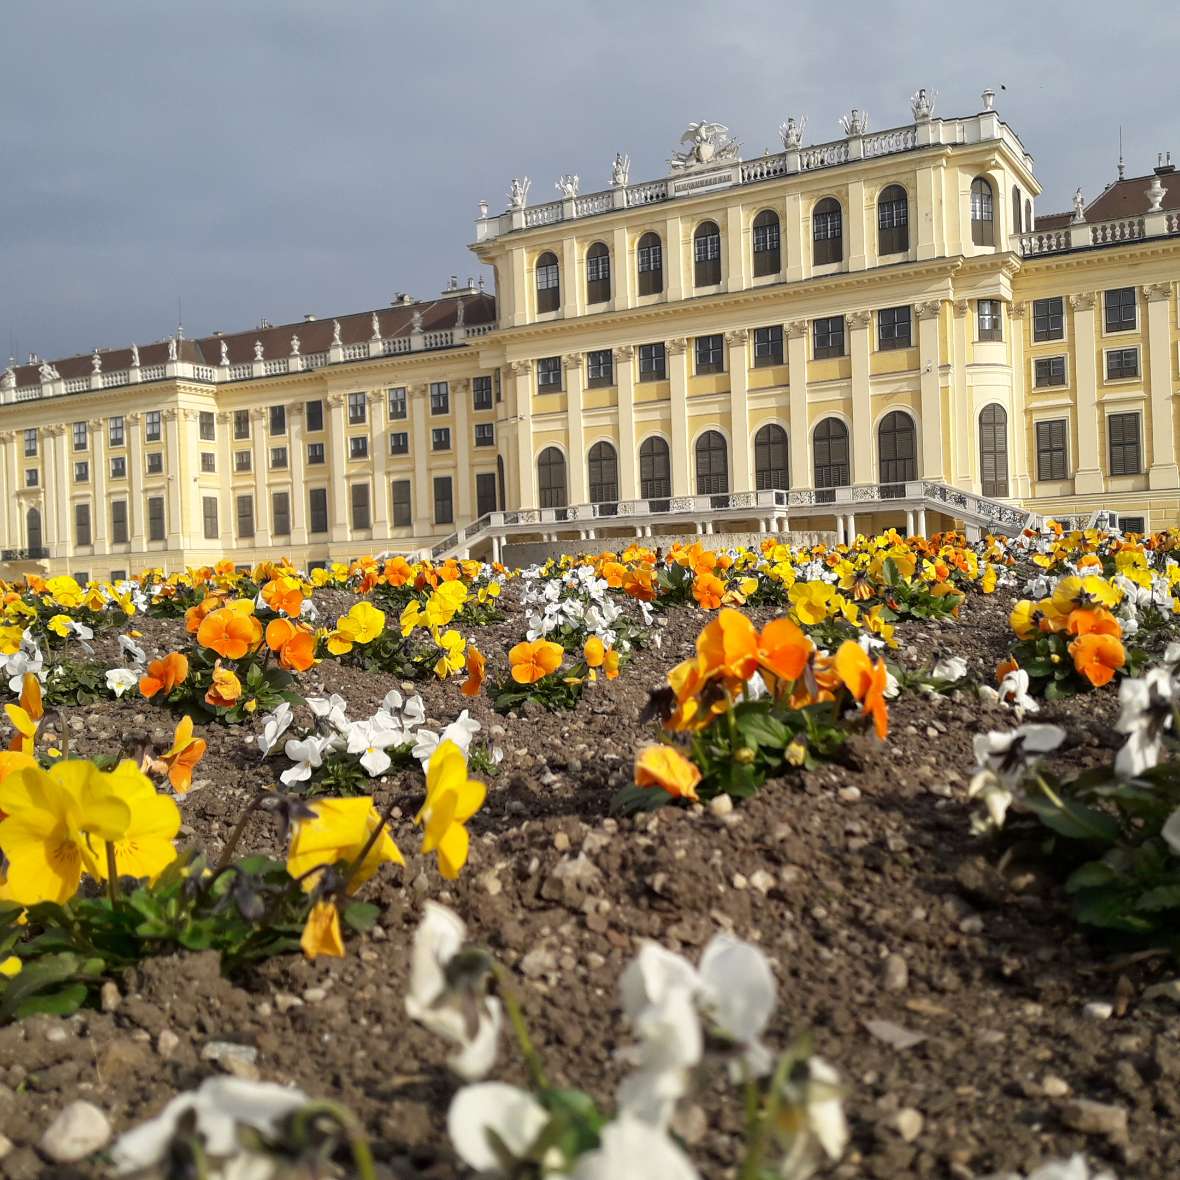 zu sehen sind gelbe Blumen in einem Beet, dahinter sieht man das Schloss Schönbrunn